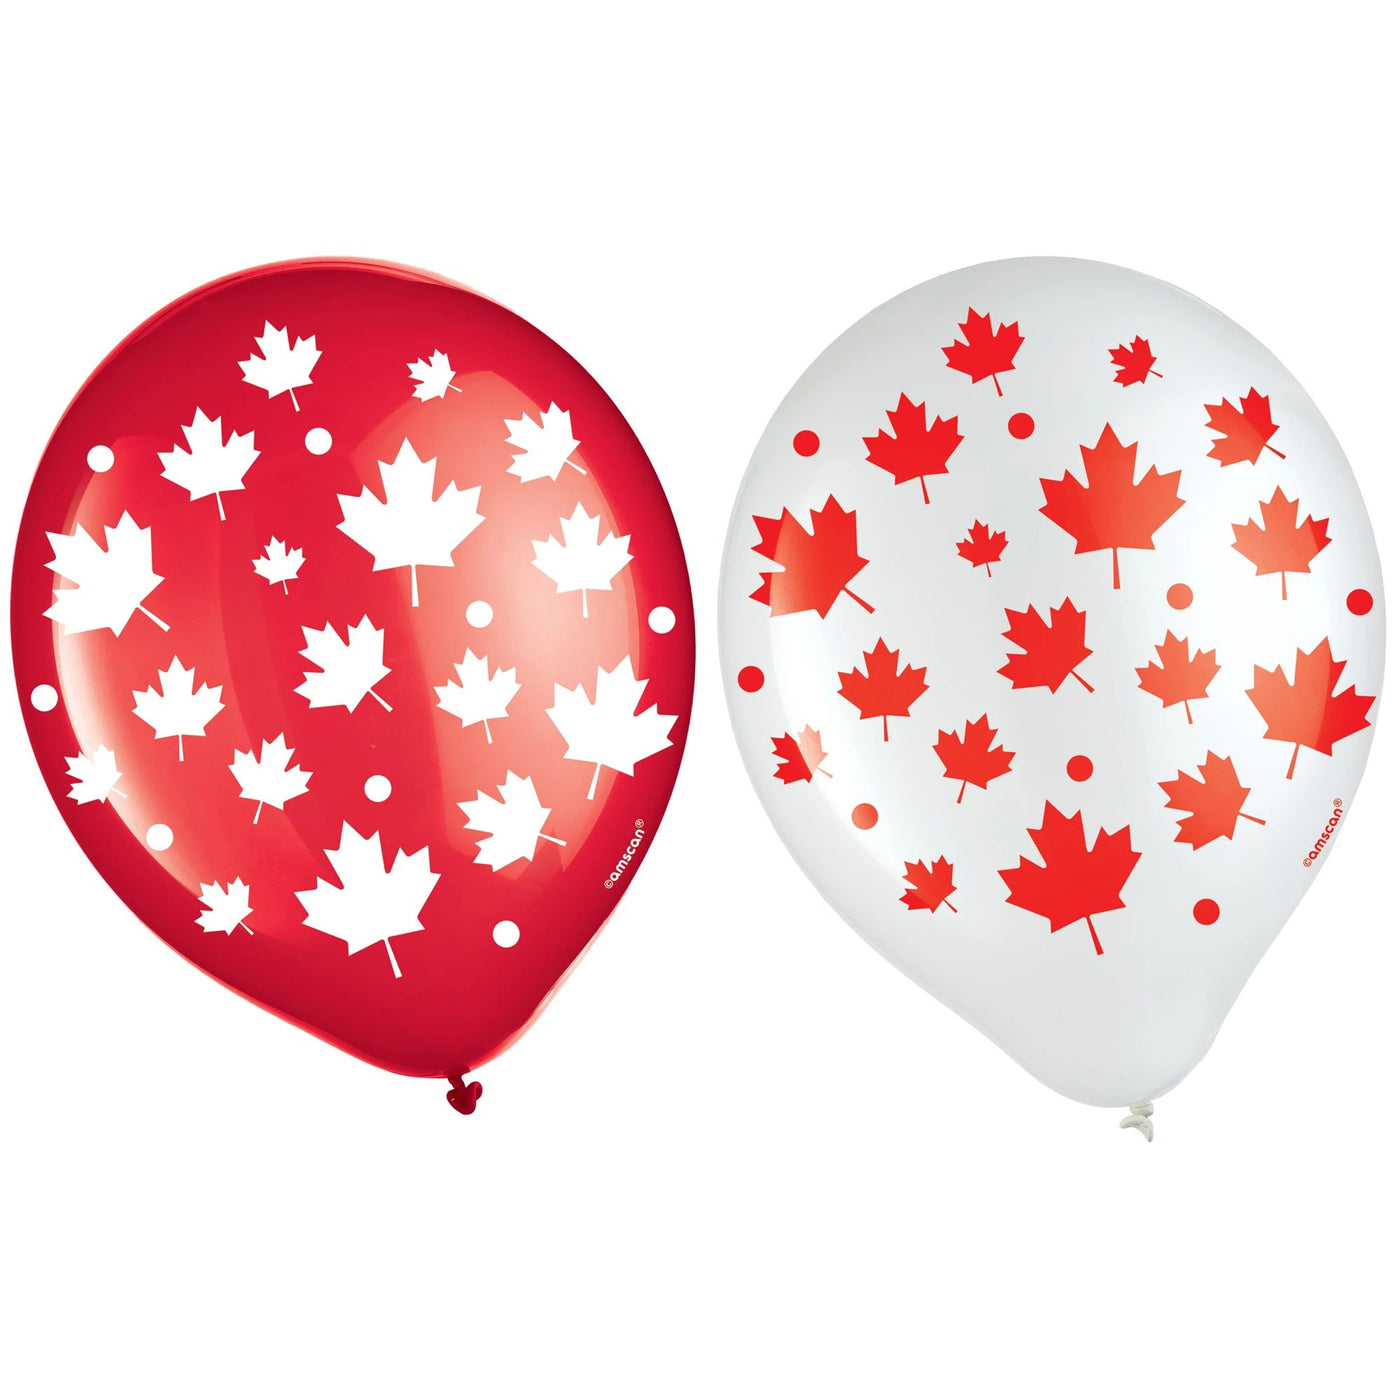 Ballons emballés pour la fête du Canada 12in